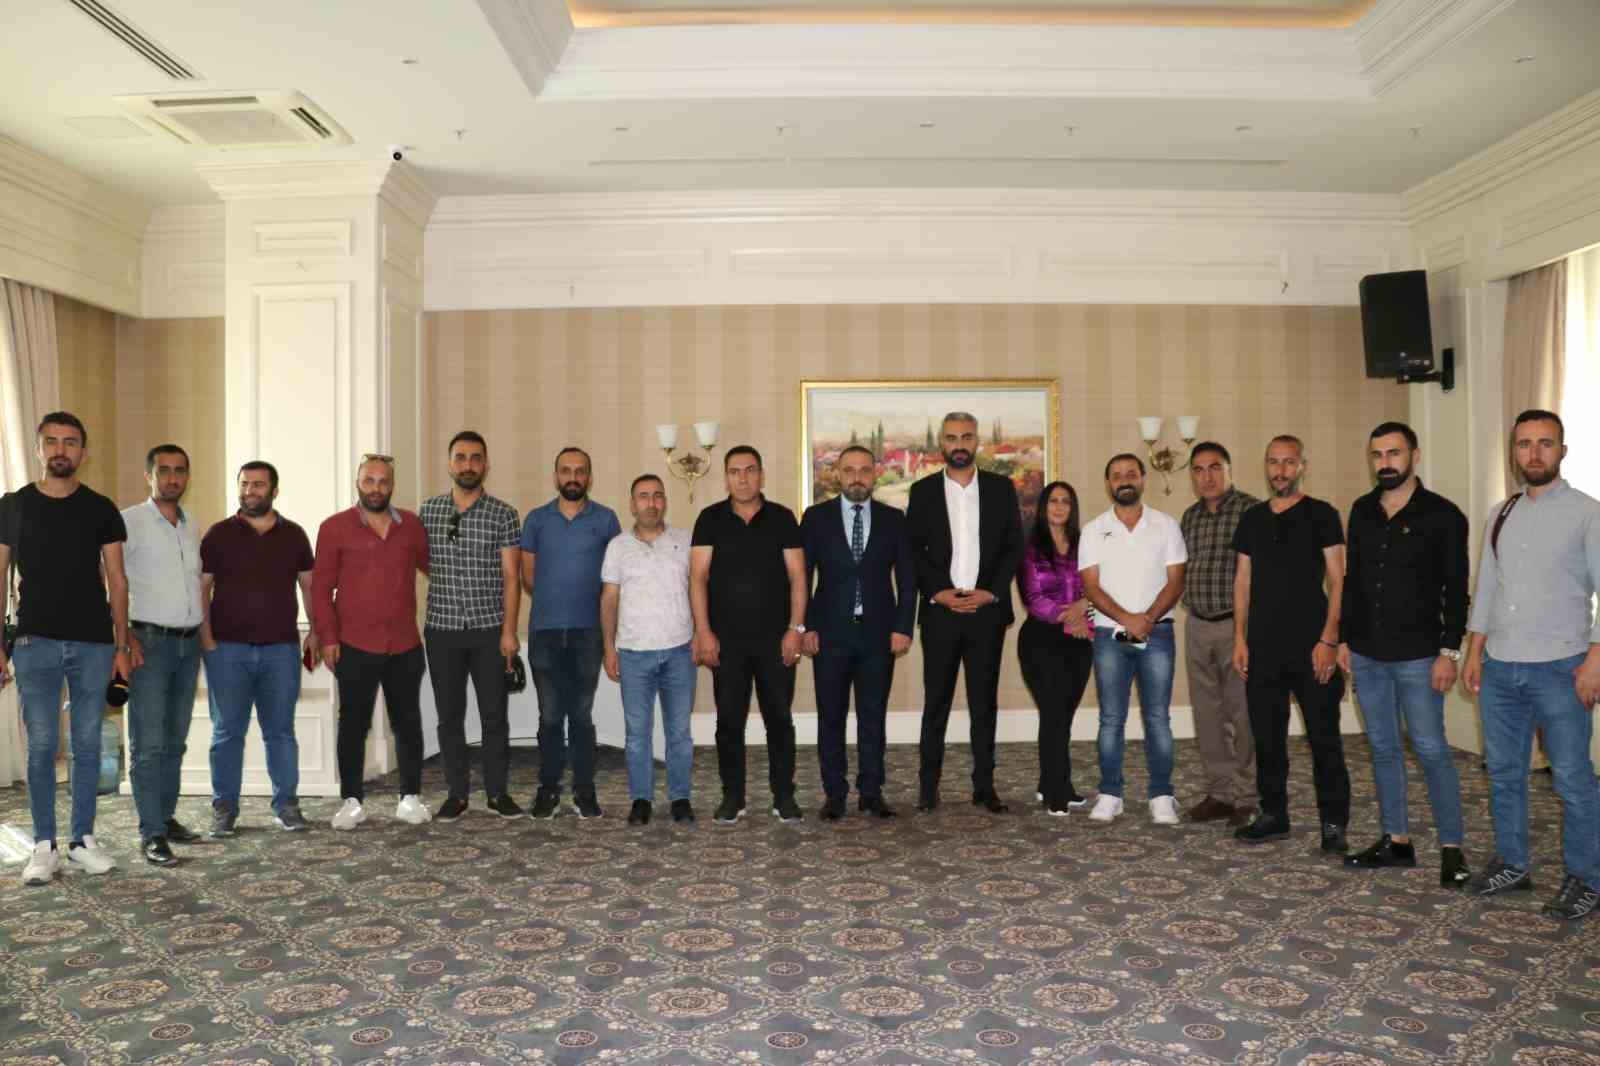 İnşaat Yüksek Mühendisi Faruk Görünüş, AK Parti’den Van Büyükşehir Belediye Başkan aday adaylığını açıkladı